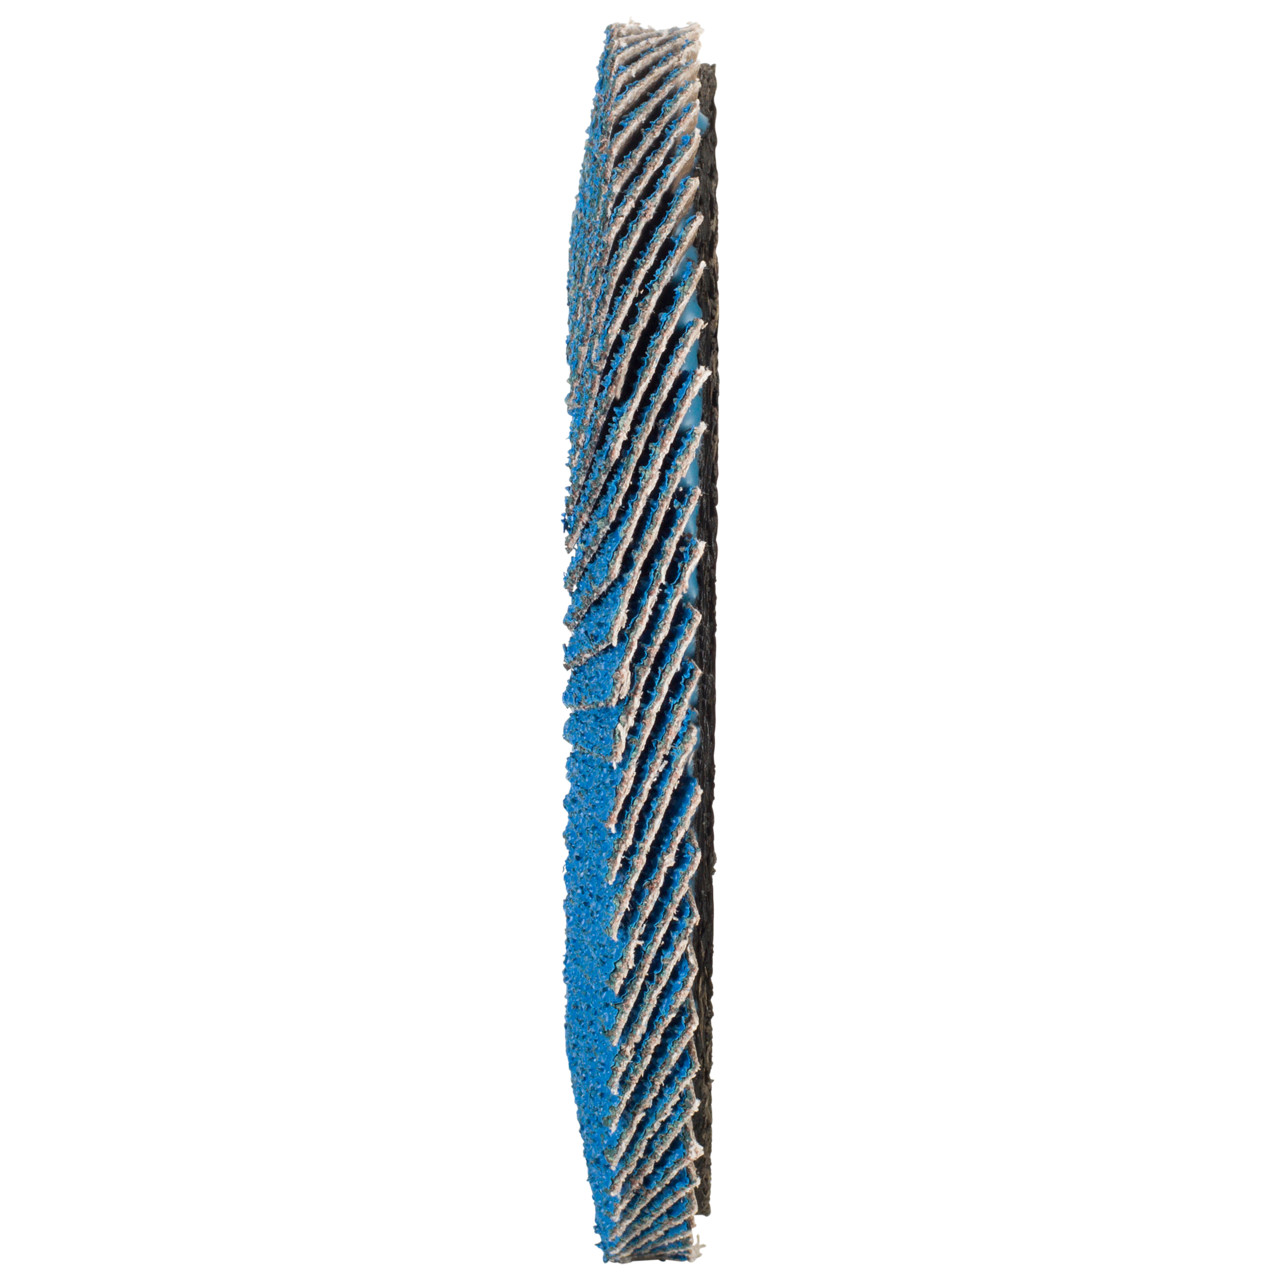 TYROLIT Fächerscheibe DxH 125x22,2 FASTCUT für Stahl & Edelstahl, P60, Form: 28N - gerade Ausführung (Kunststoffträgerkörper), Art. 458033